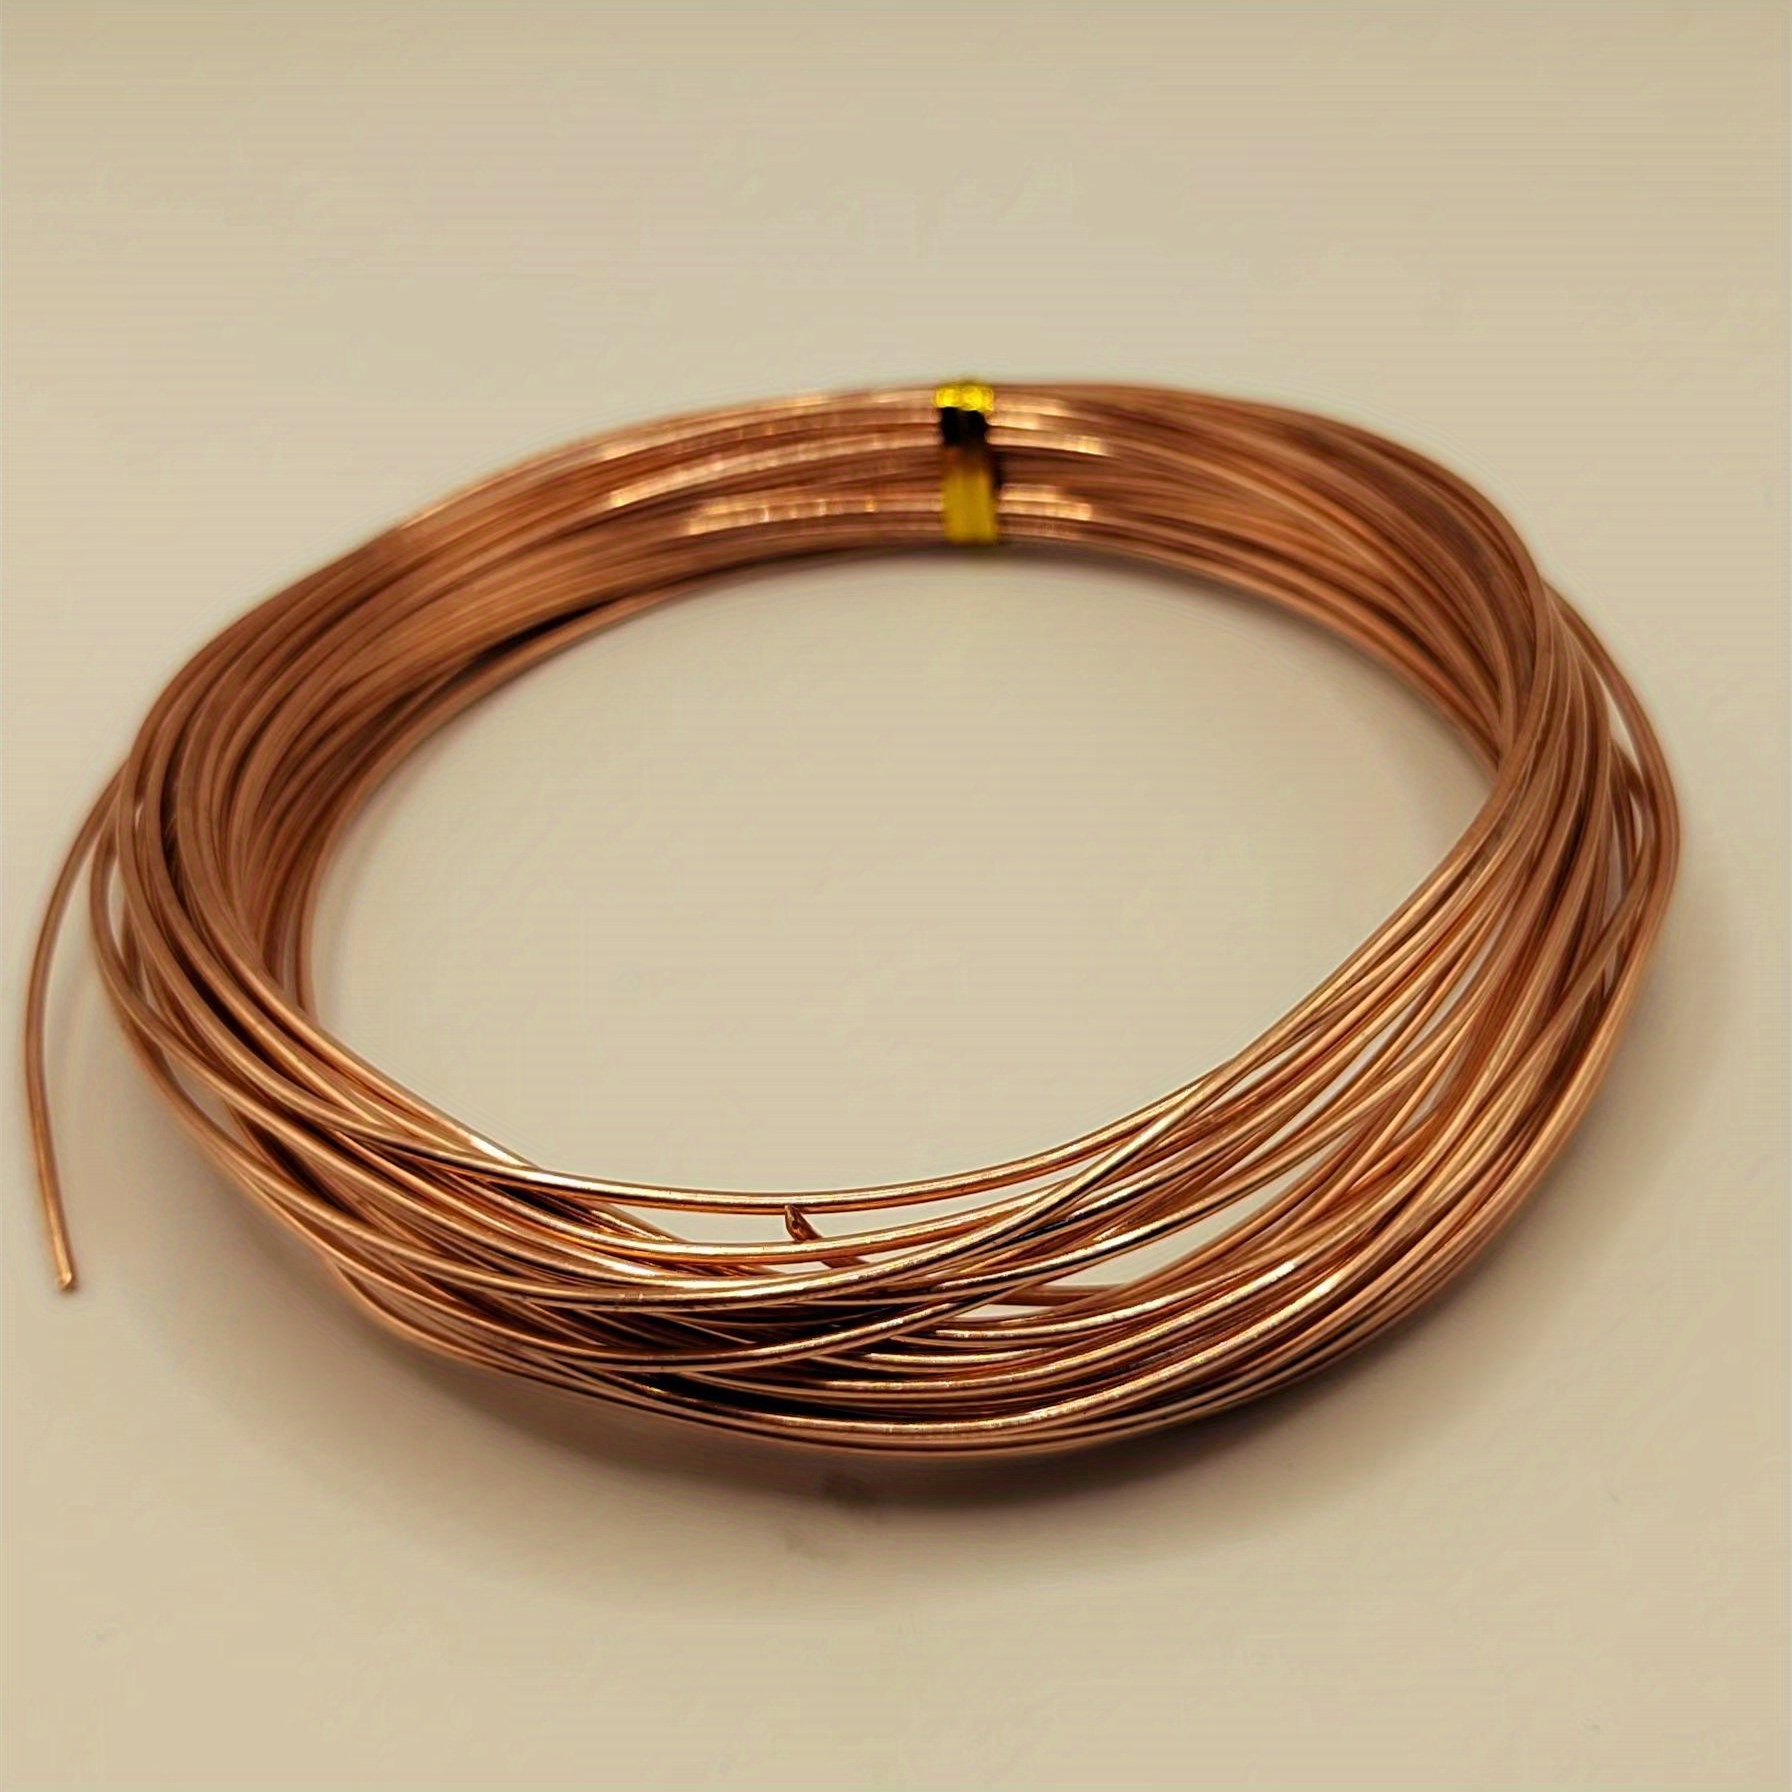 Electrical Bare Copper Wire For Sale, Bare Copper Wire For